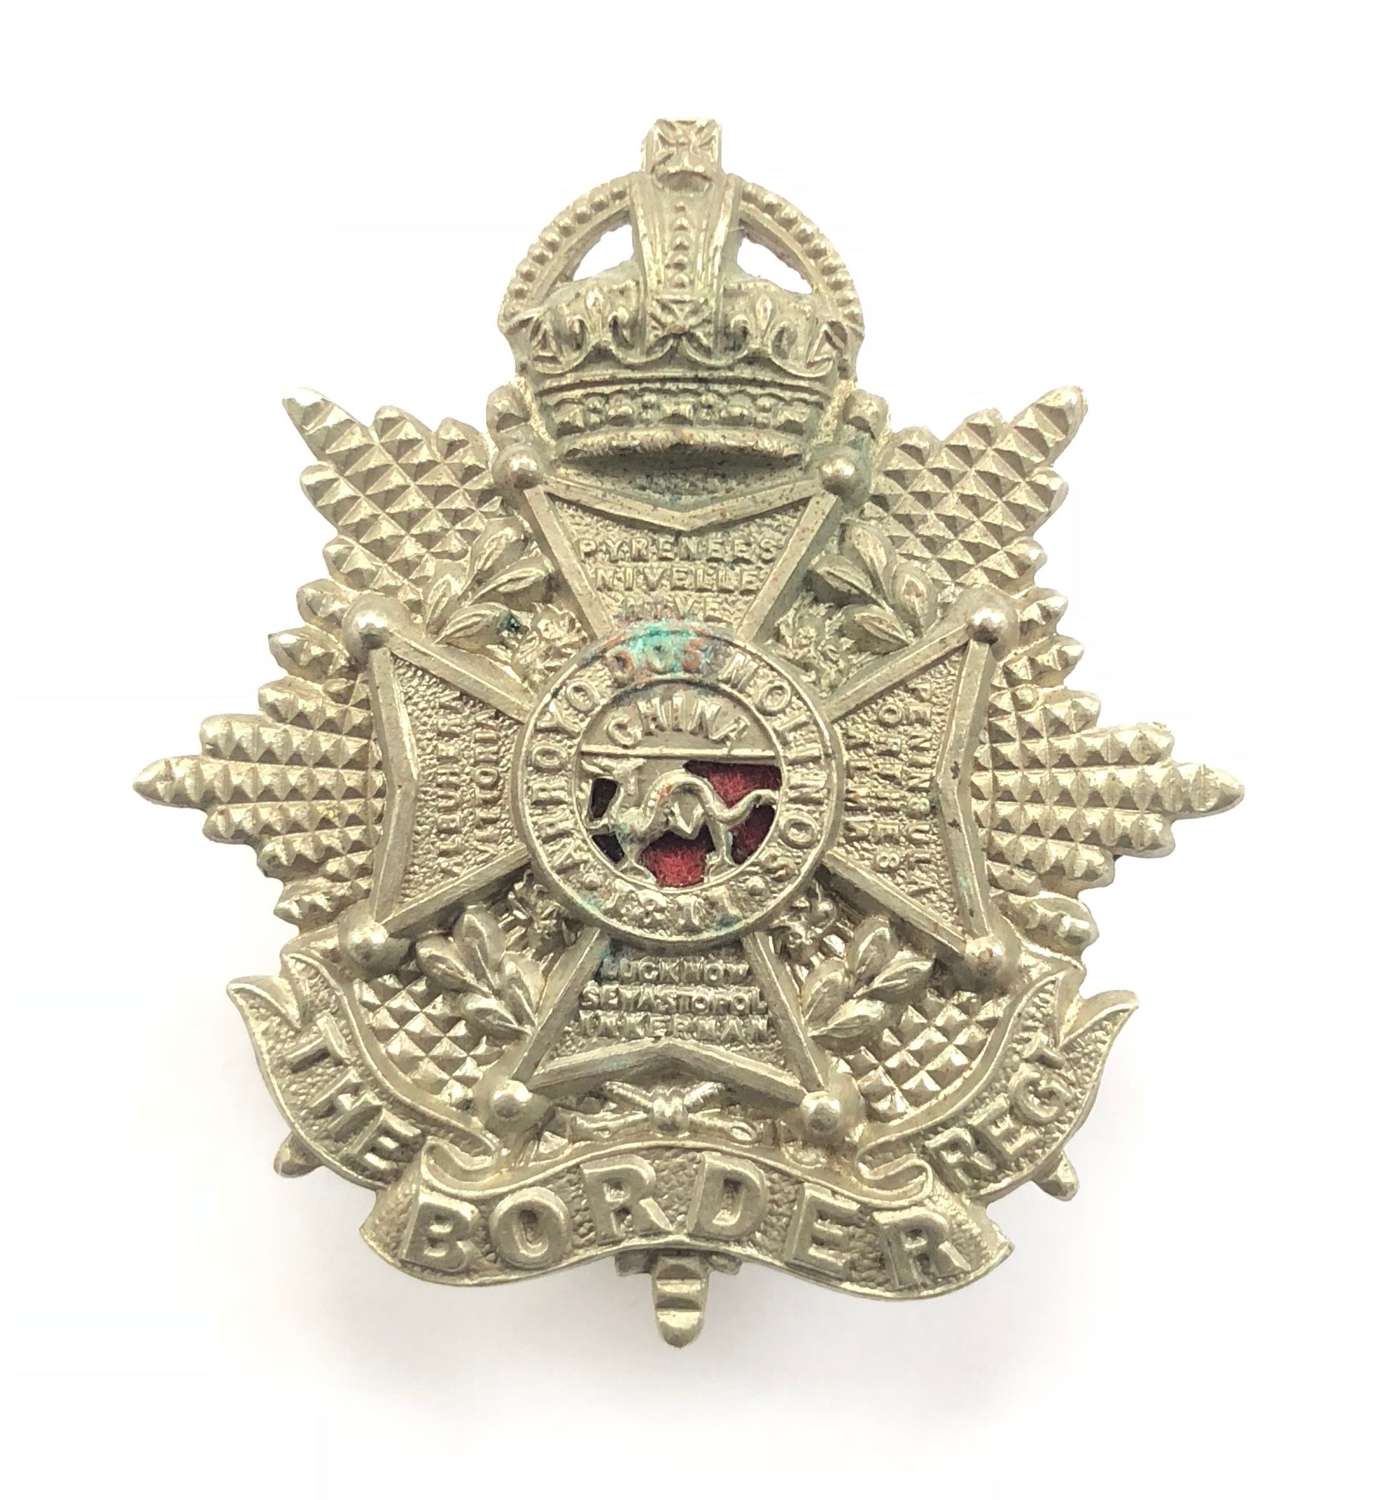 Border Regiment small Edwardian OR’s cap badge circa 1901-05